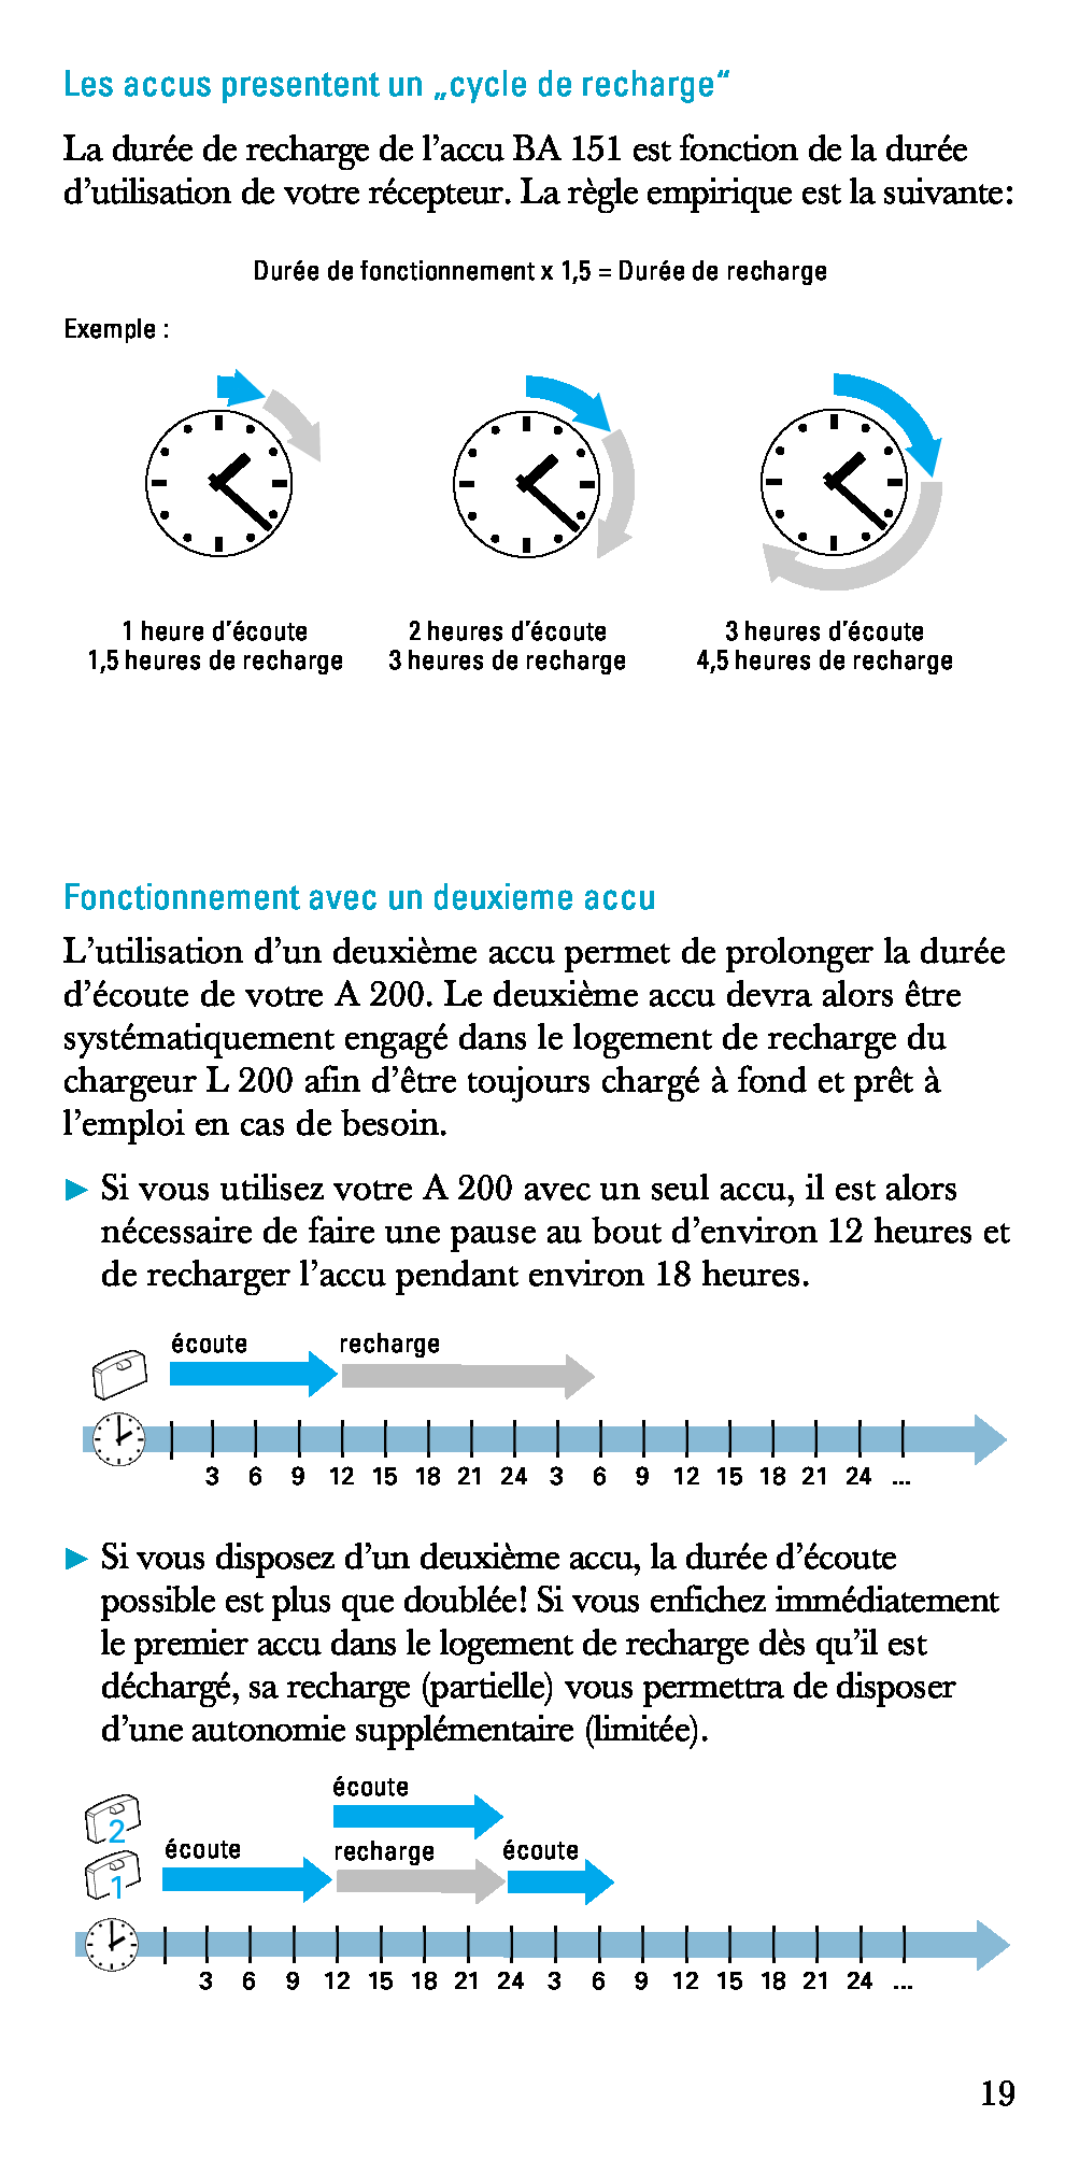 Sennheiser A200 manual Les accus presentent un „cycle de recharge“, Fonctionnement avec un deuxieme accu 